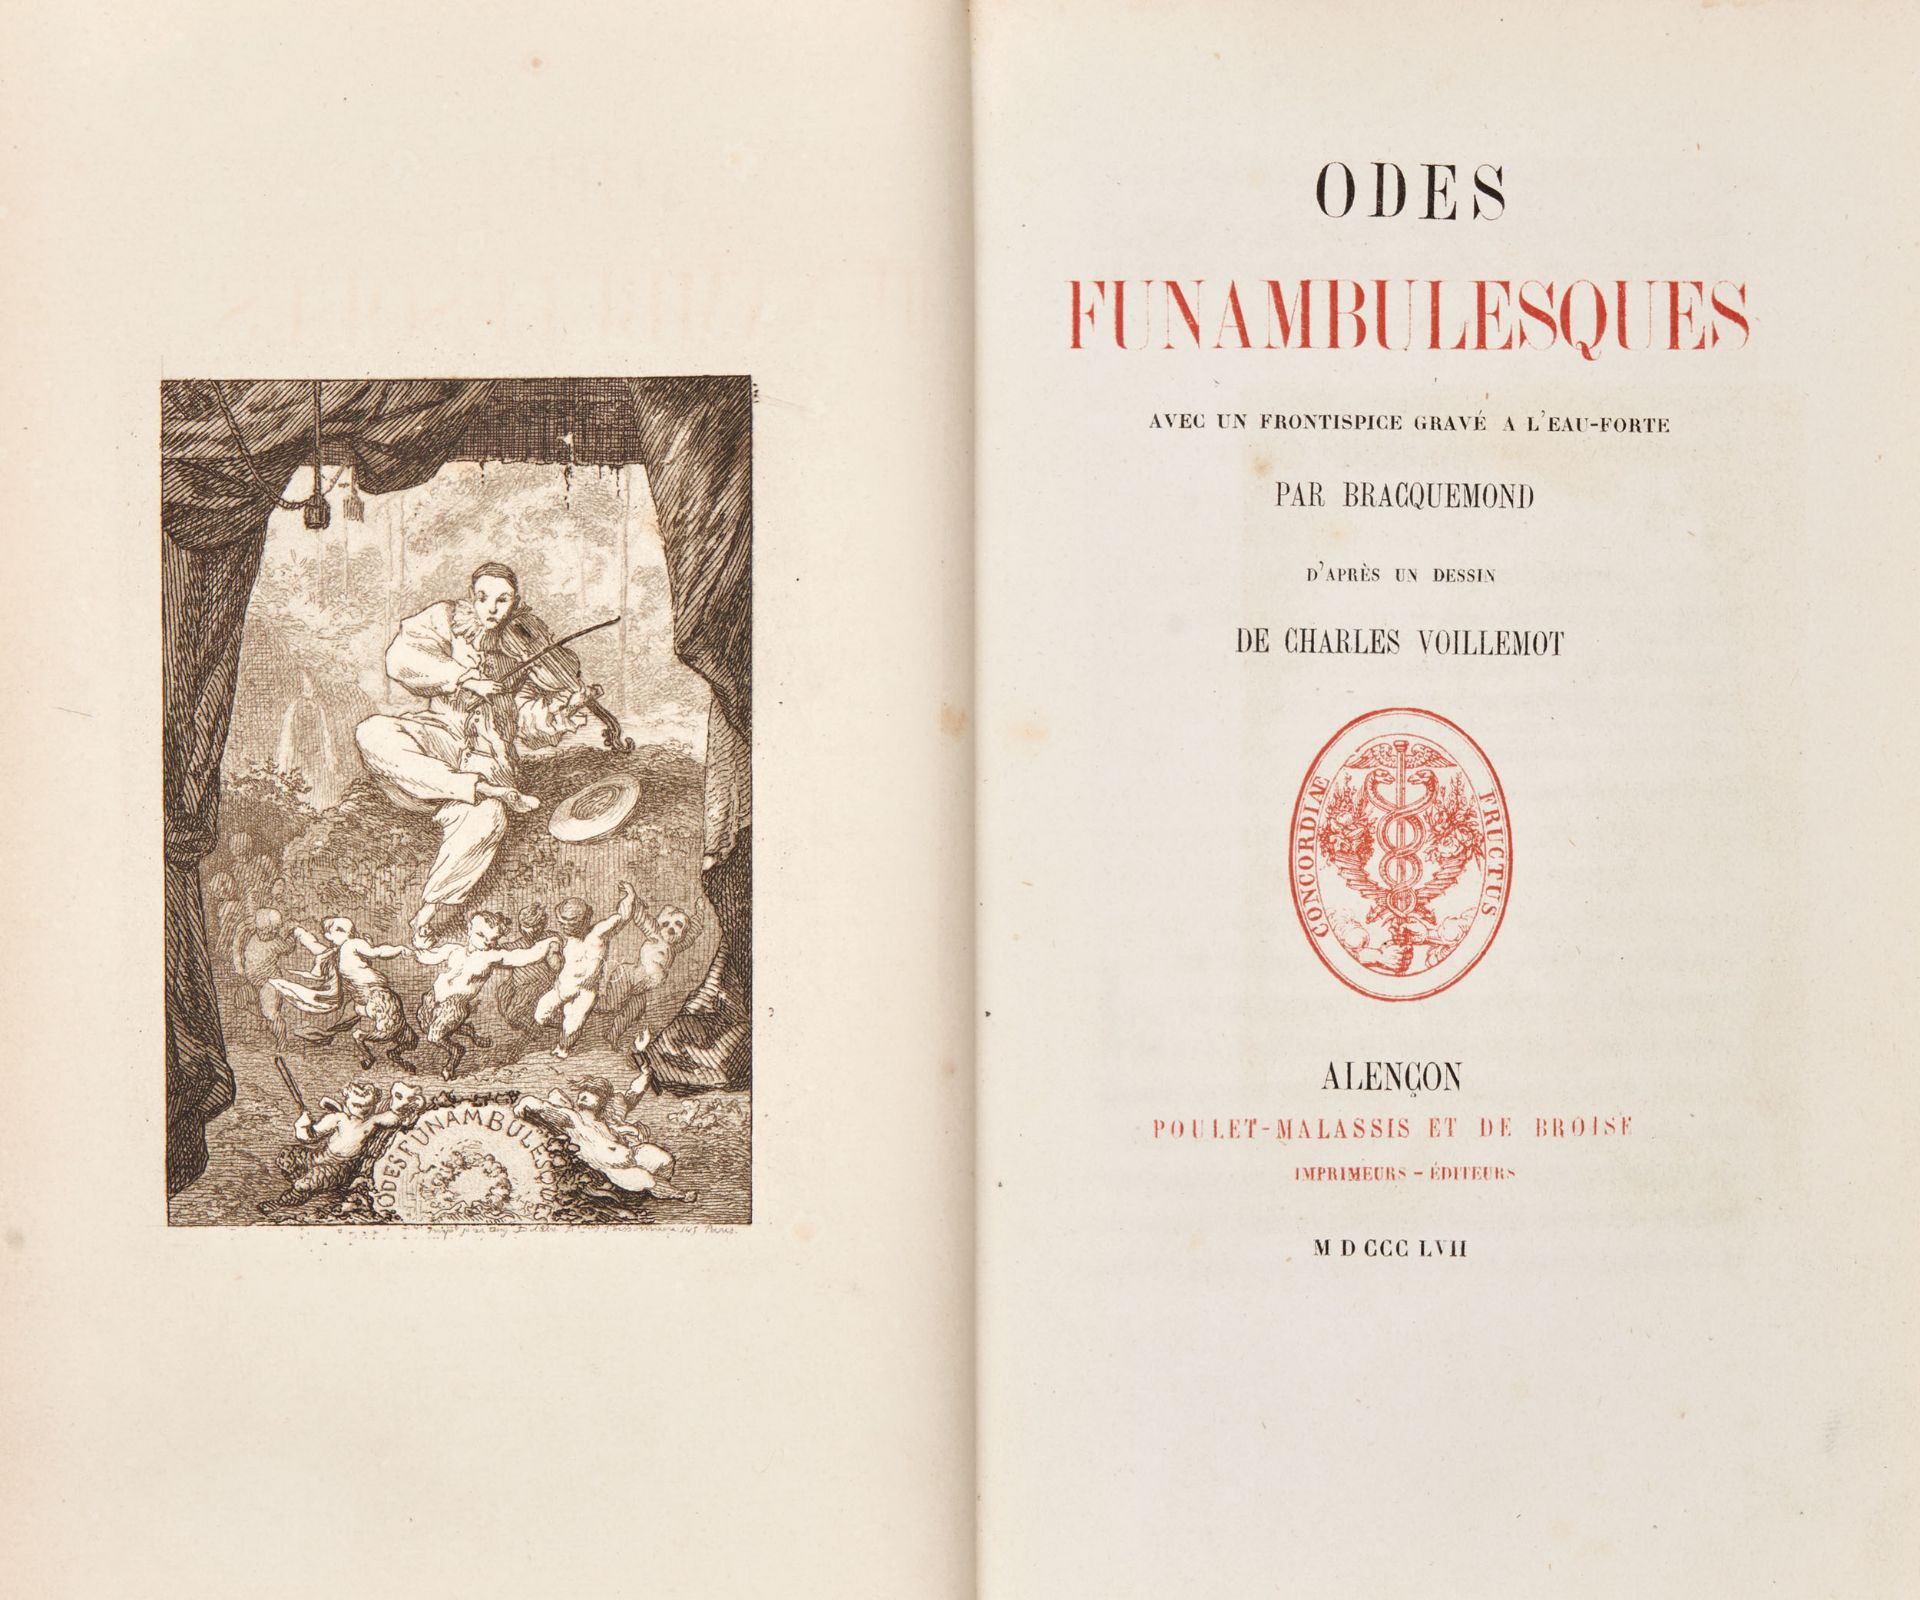 [BANVILLE, Théodore de]. Odes funambulesques. Alenéon: Poulet-Malassis et de Broise, 1857. - Image 2 of 2